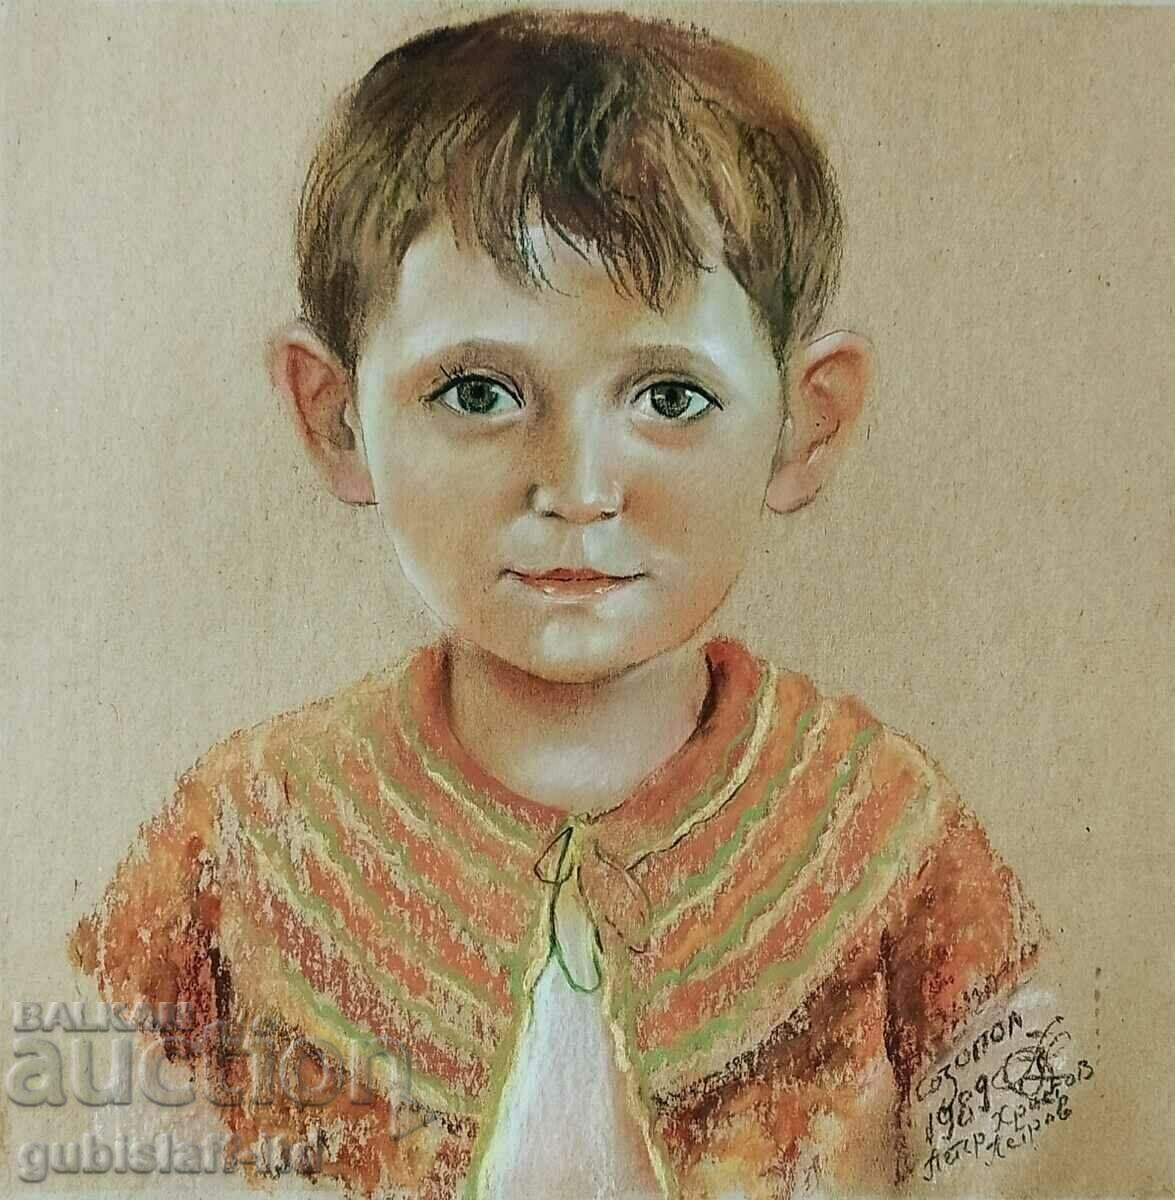 Ζωγραφική, παιδικό πορτρέτο, τέχνη. Petar Petrov, 1989